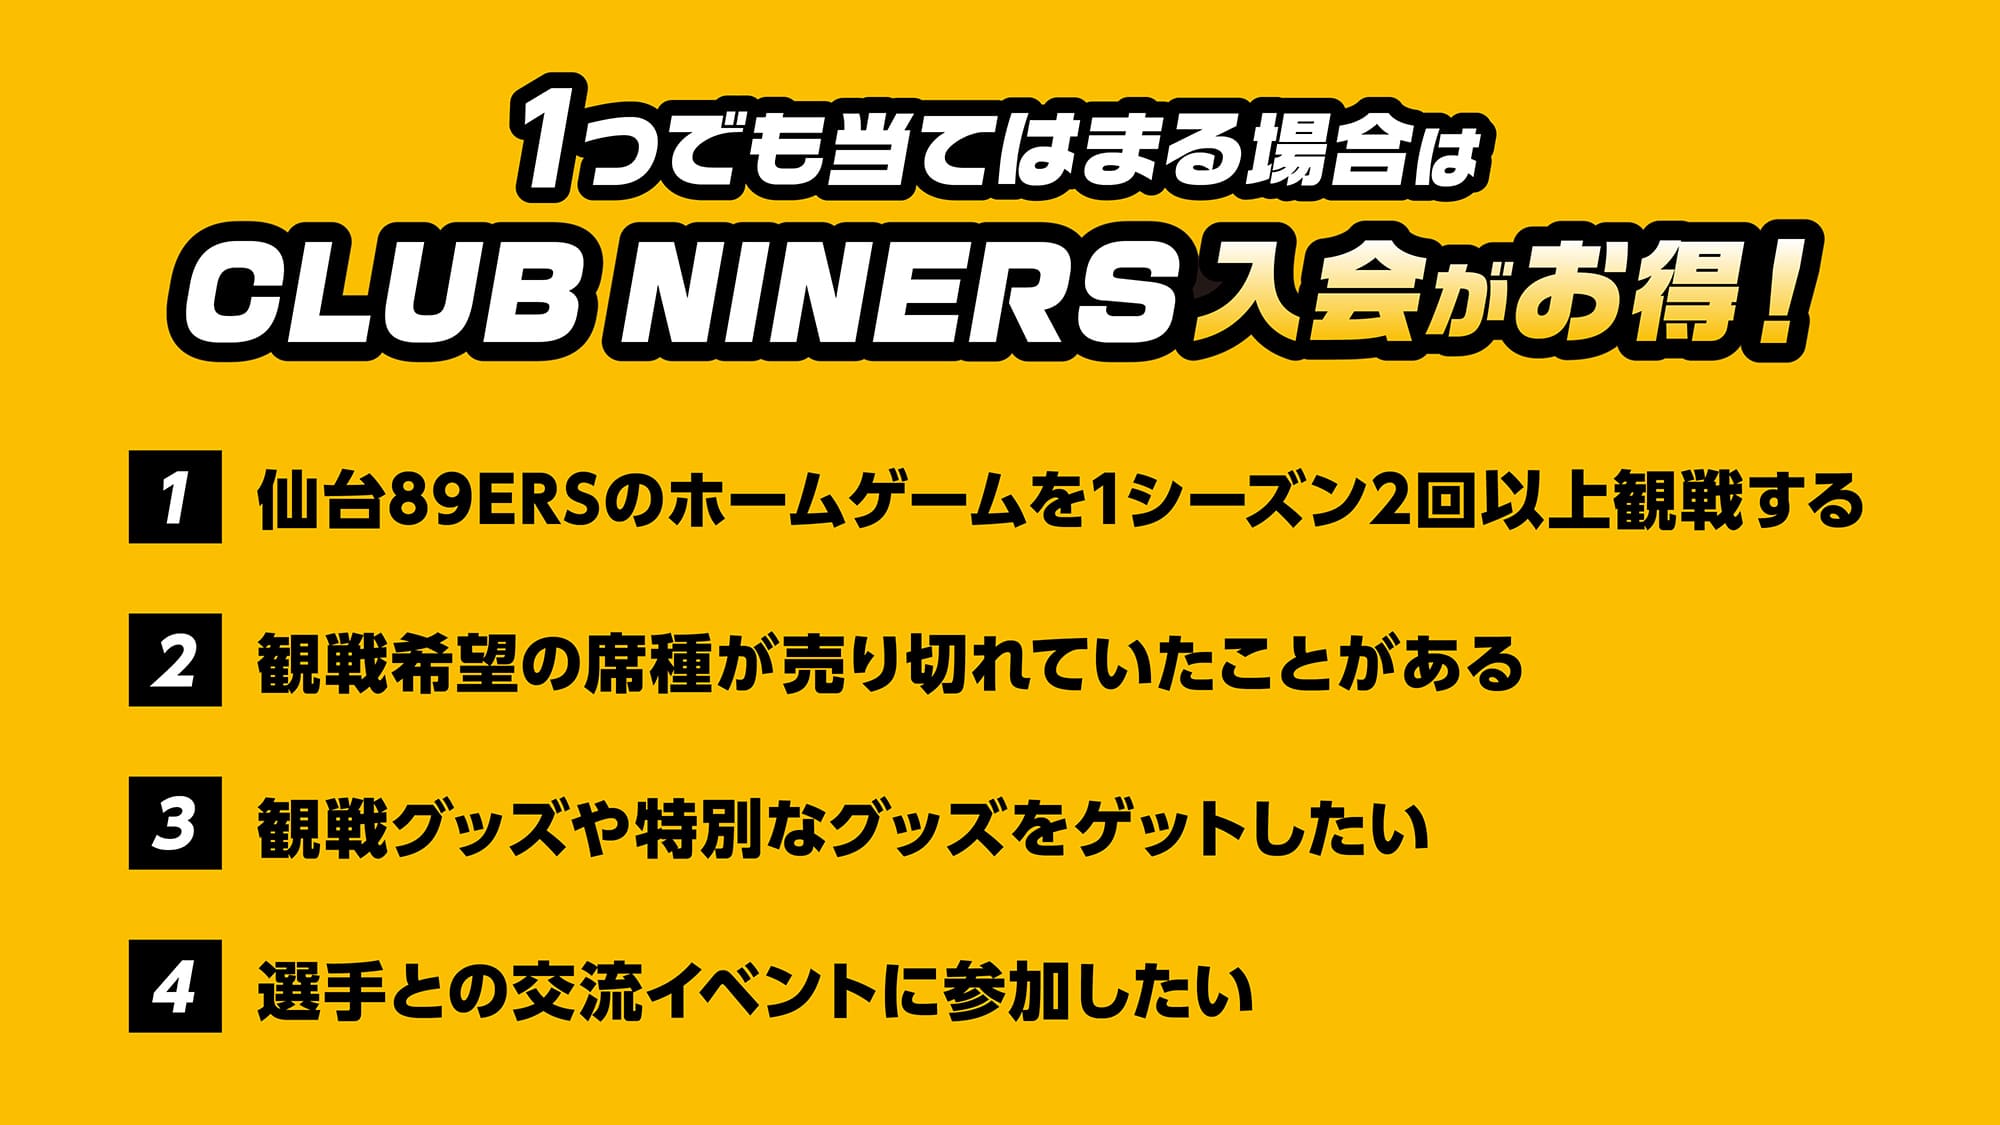 1つでも当てはまる場合は CLUB NINERS 入会がお得！